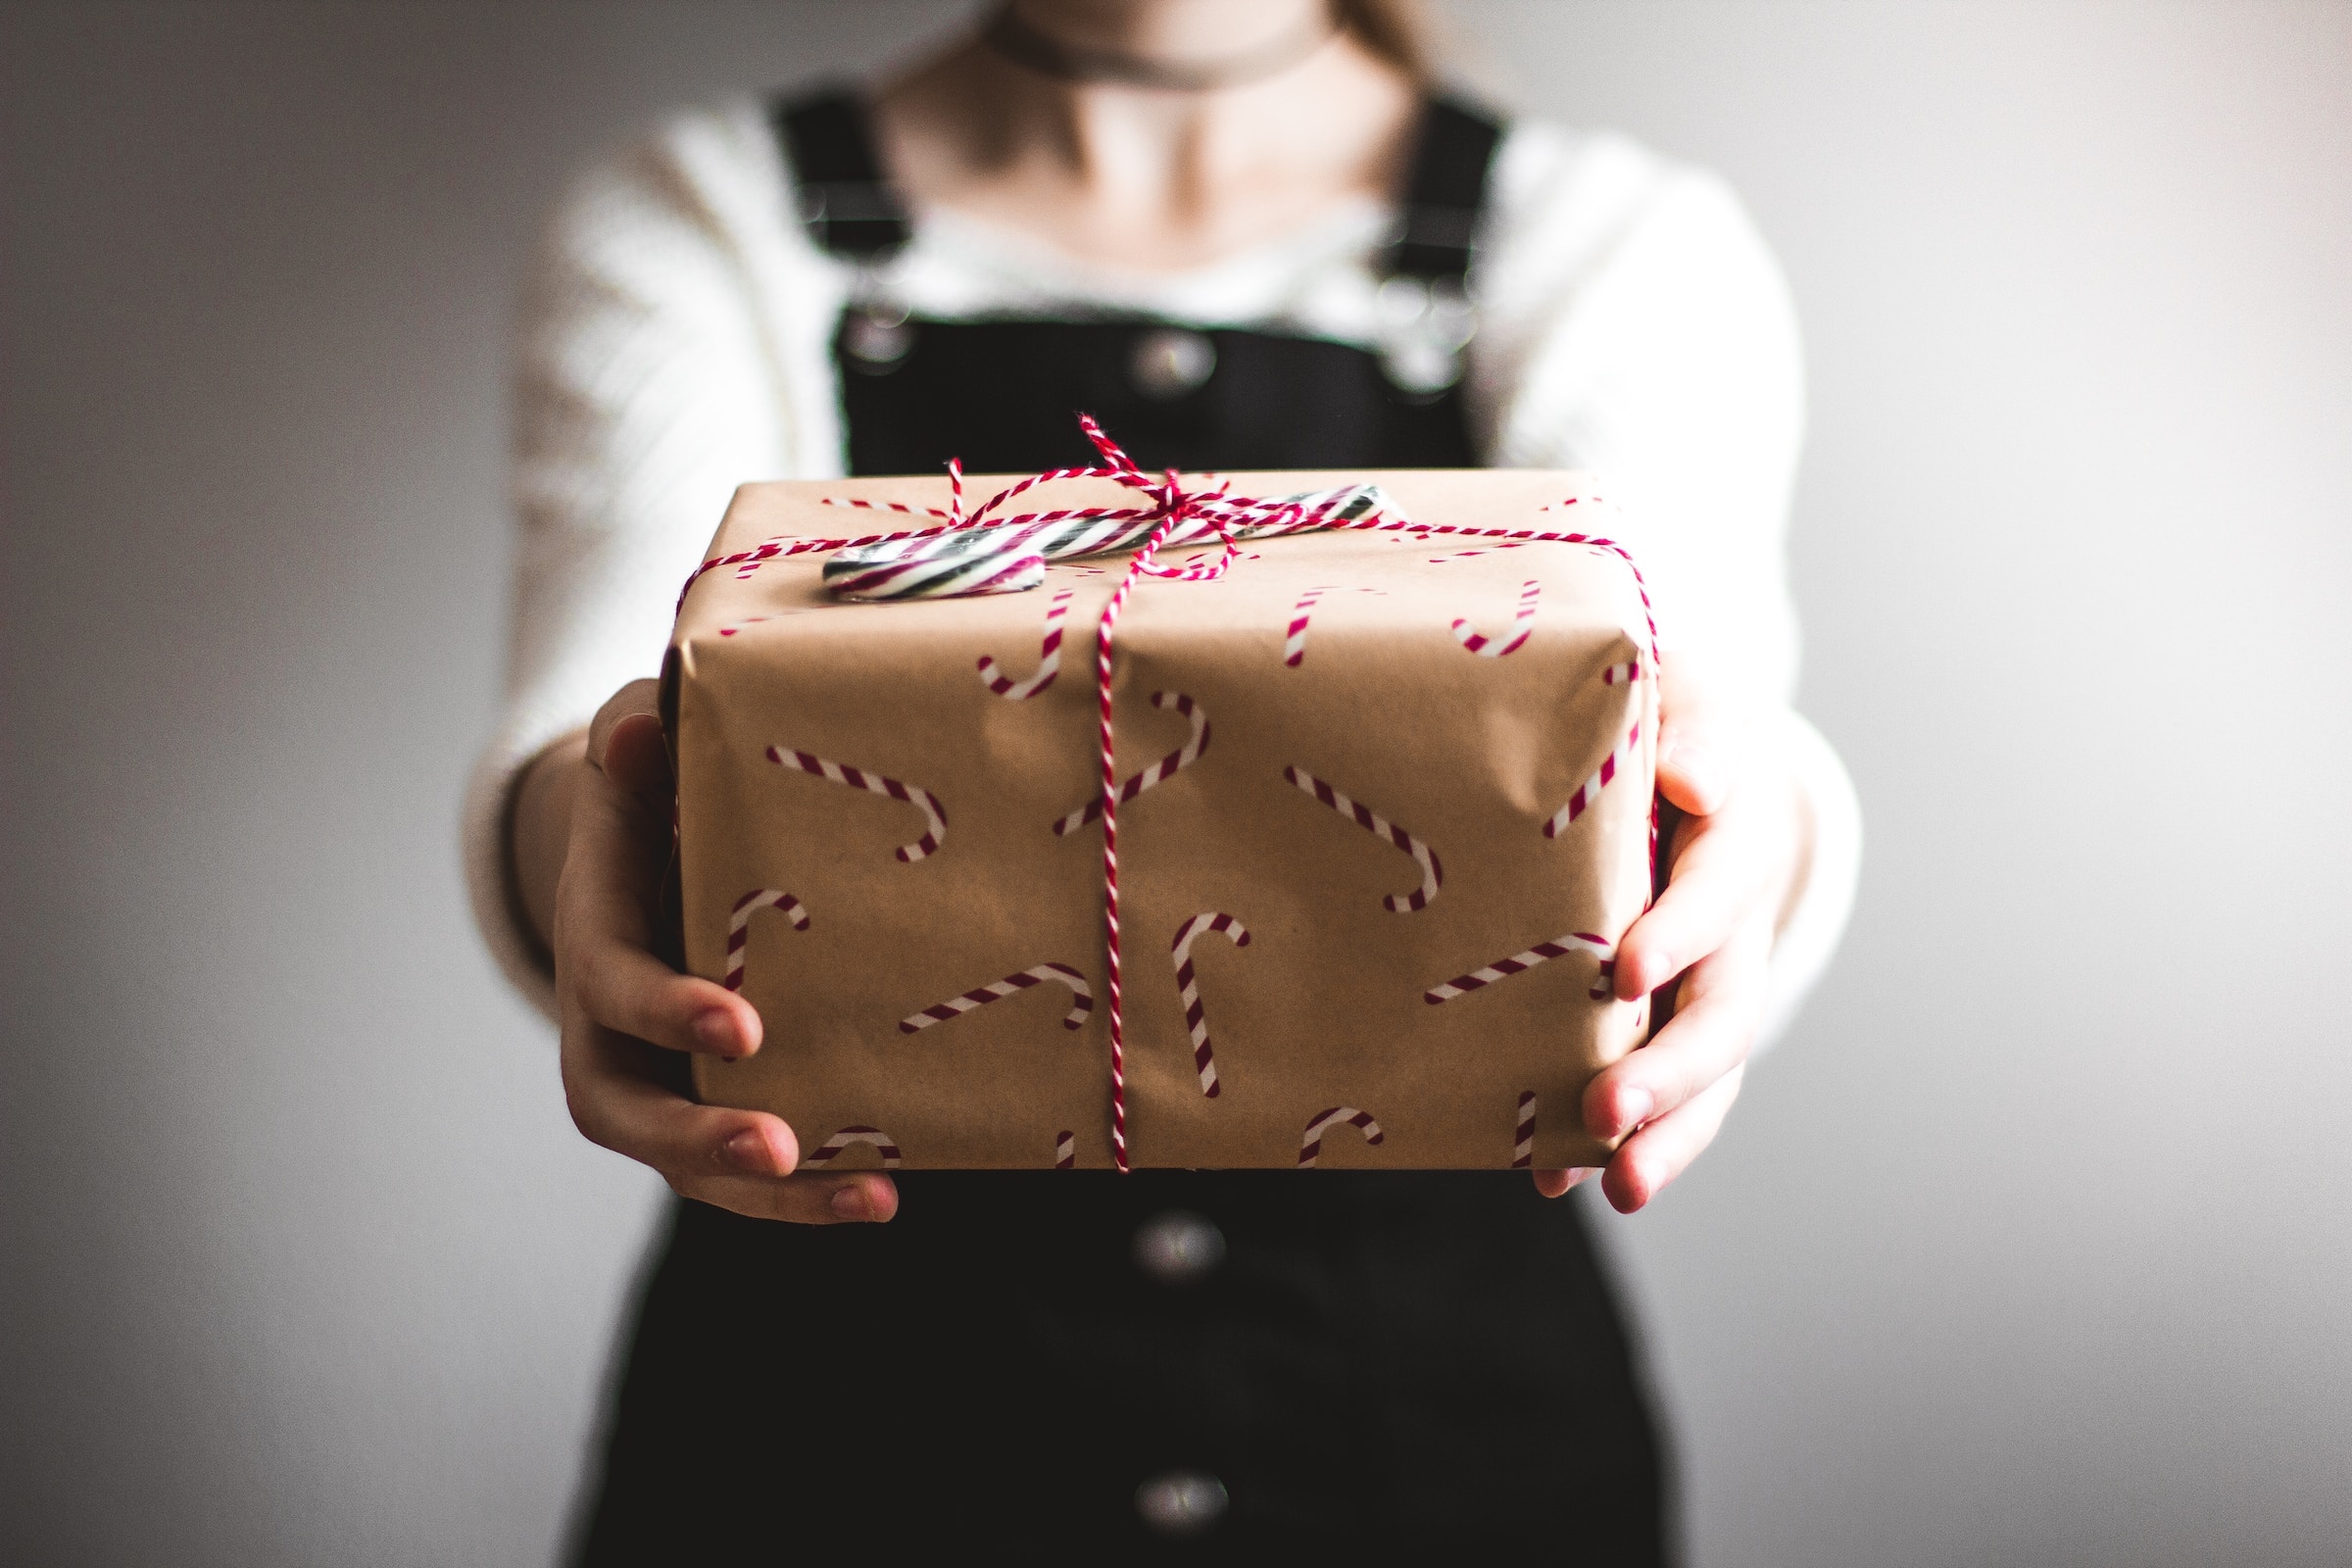 Dávání dárků učitelům na Vánoce není výjimečné, ale převládají rodiny, kde nic podobného neřeší.